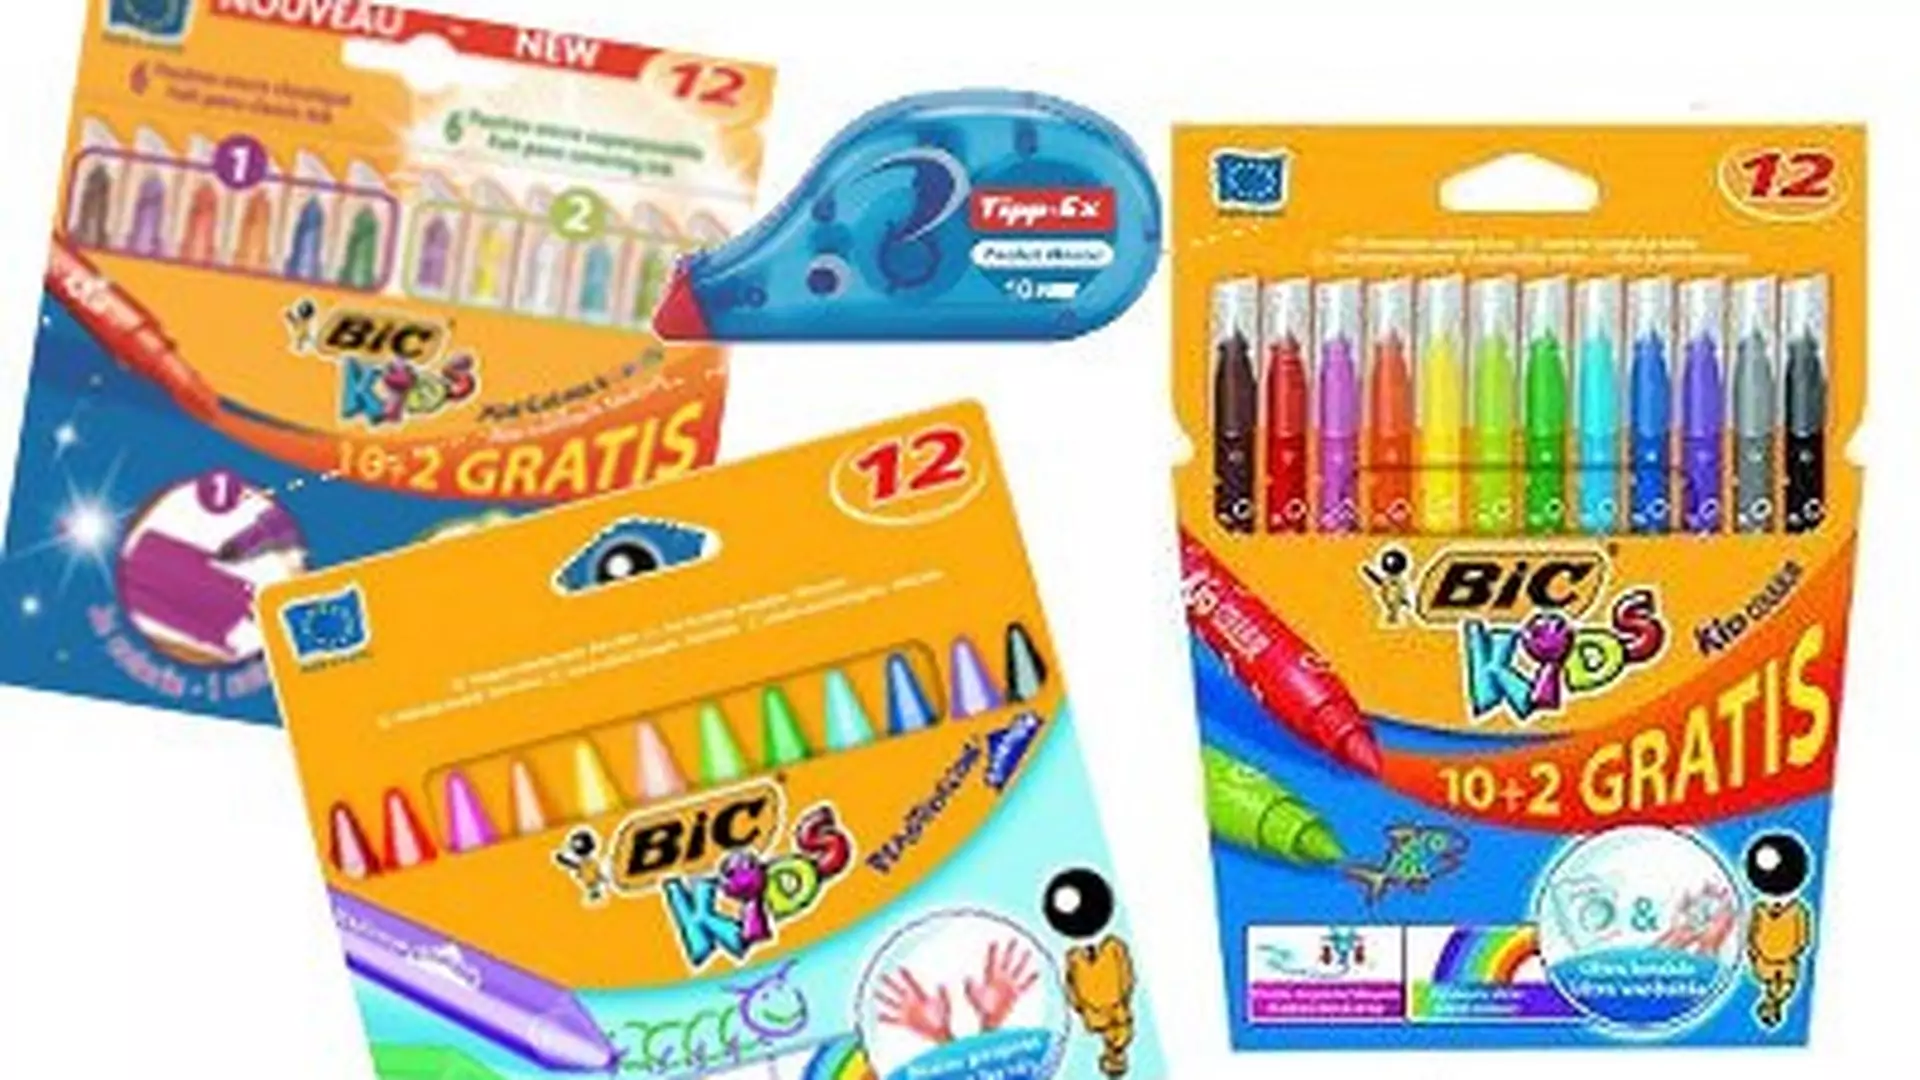 Wracamy do szkoły: kolorowe kredki i flamastry od marki BIC